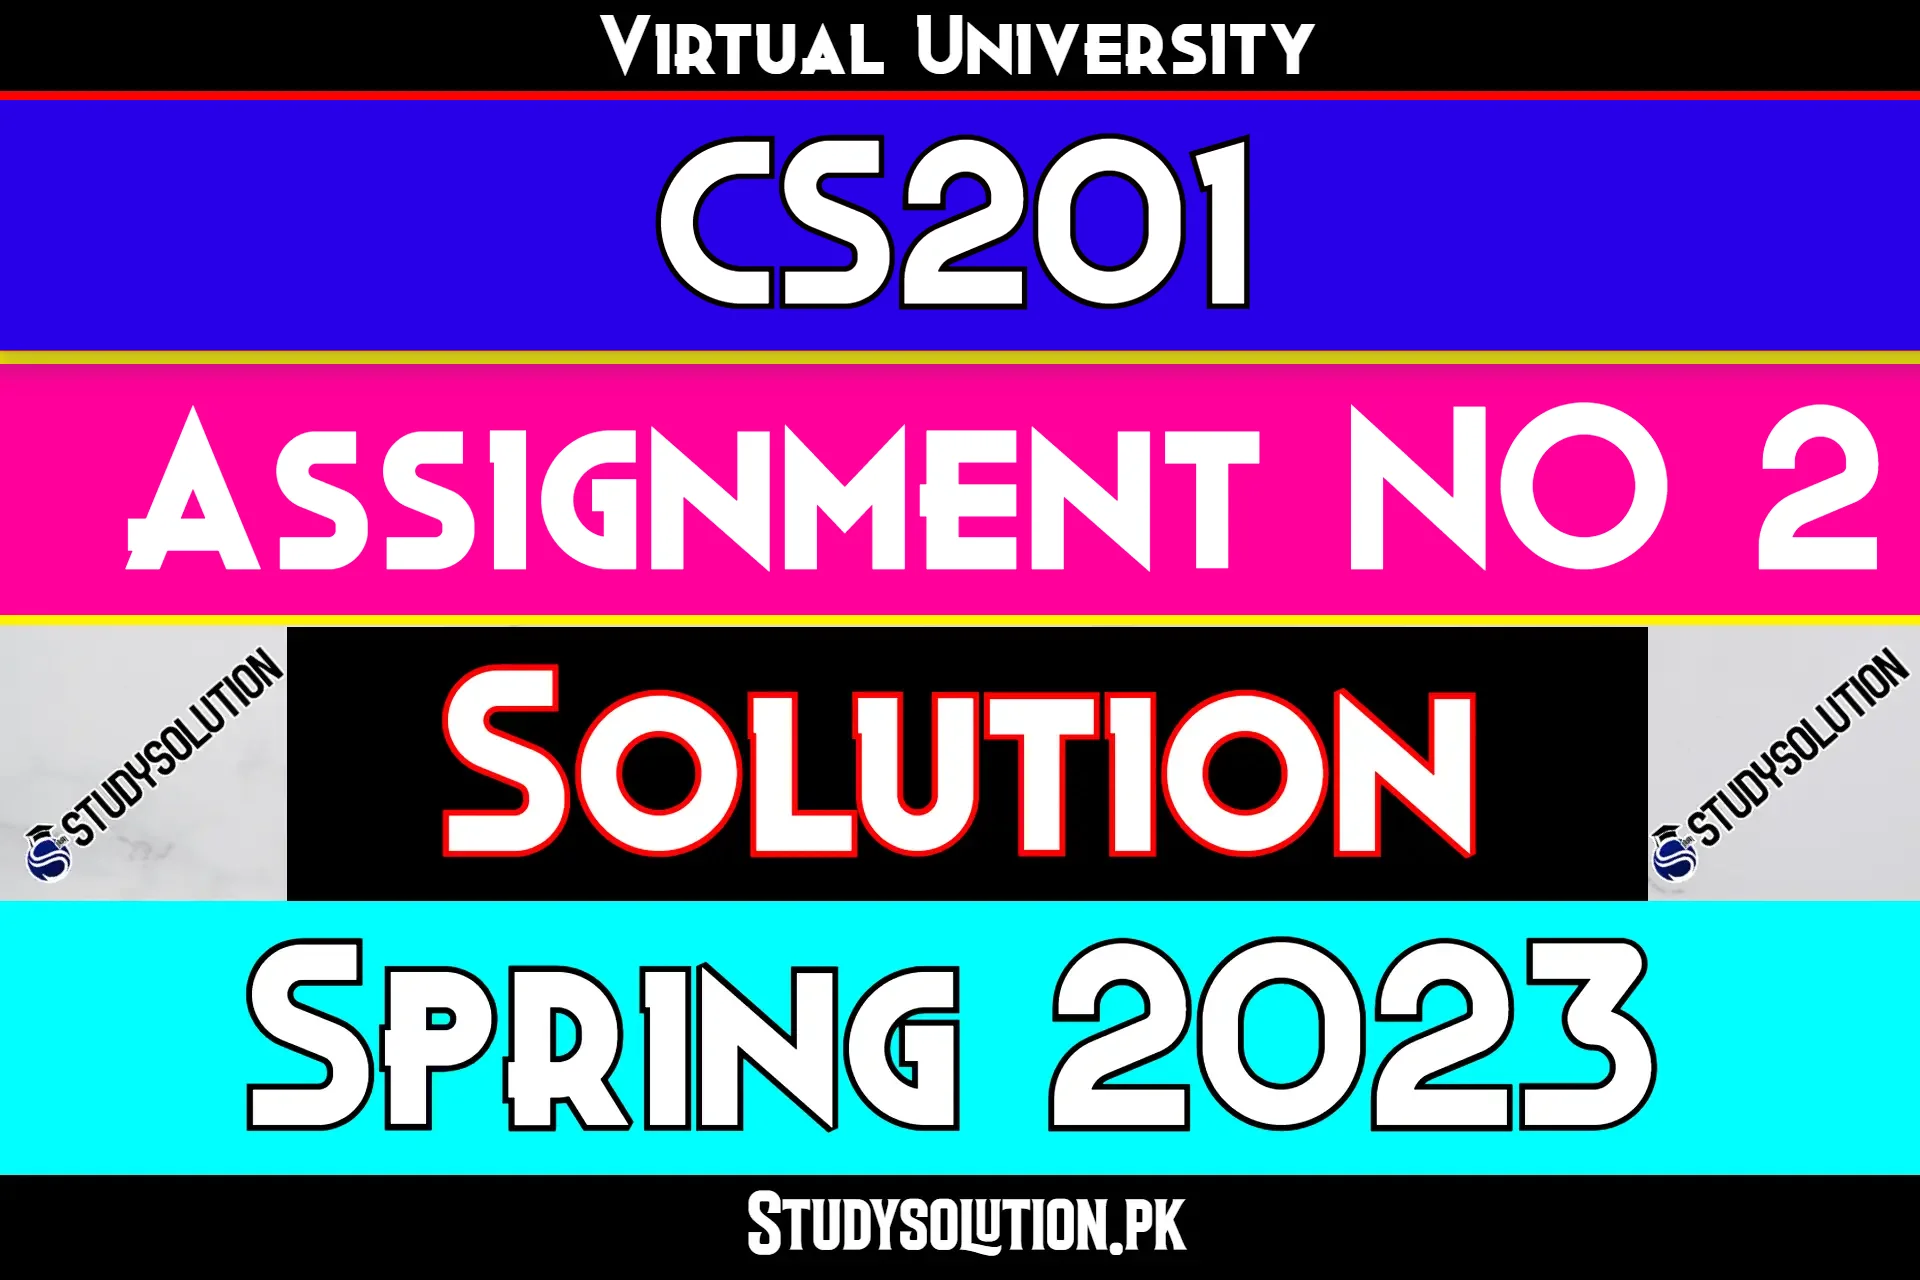 CS201 Assignment No 2 Solution Spring 2023